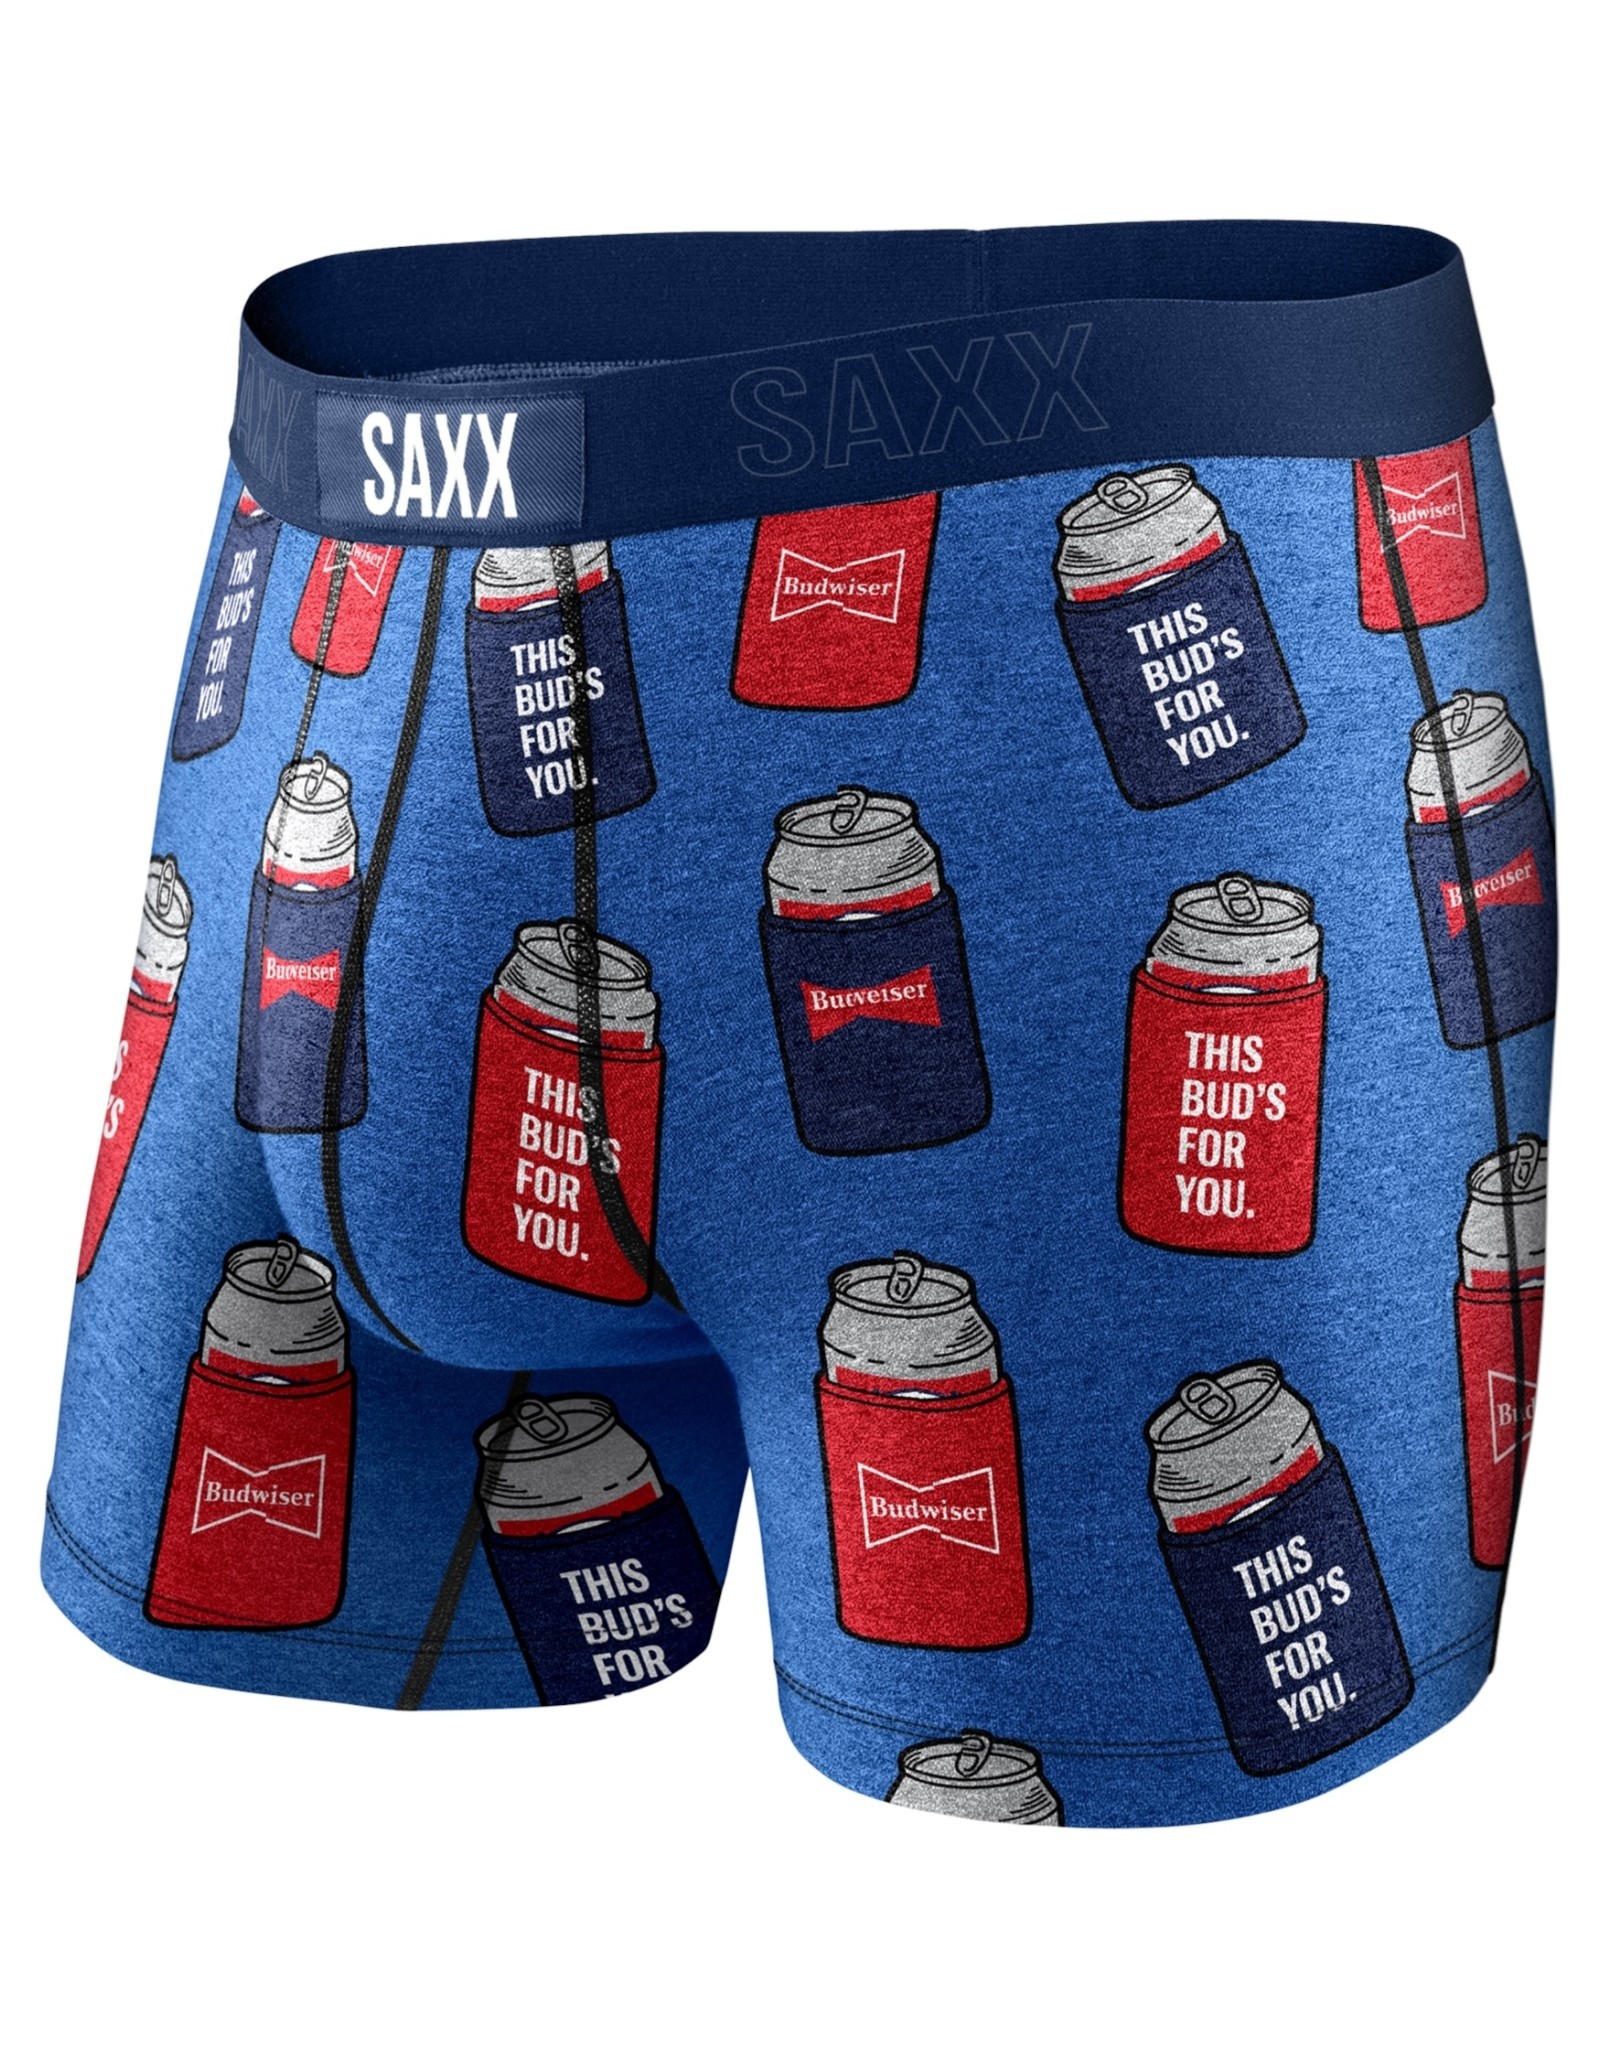 SAXX Vibe Boxer Brief +Colors